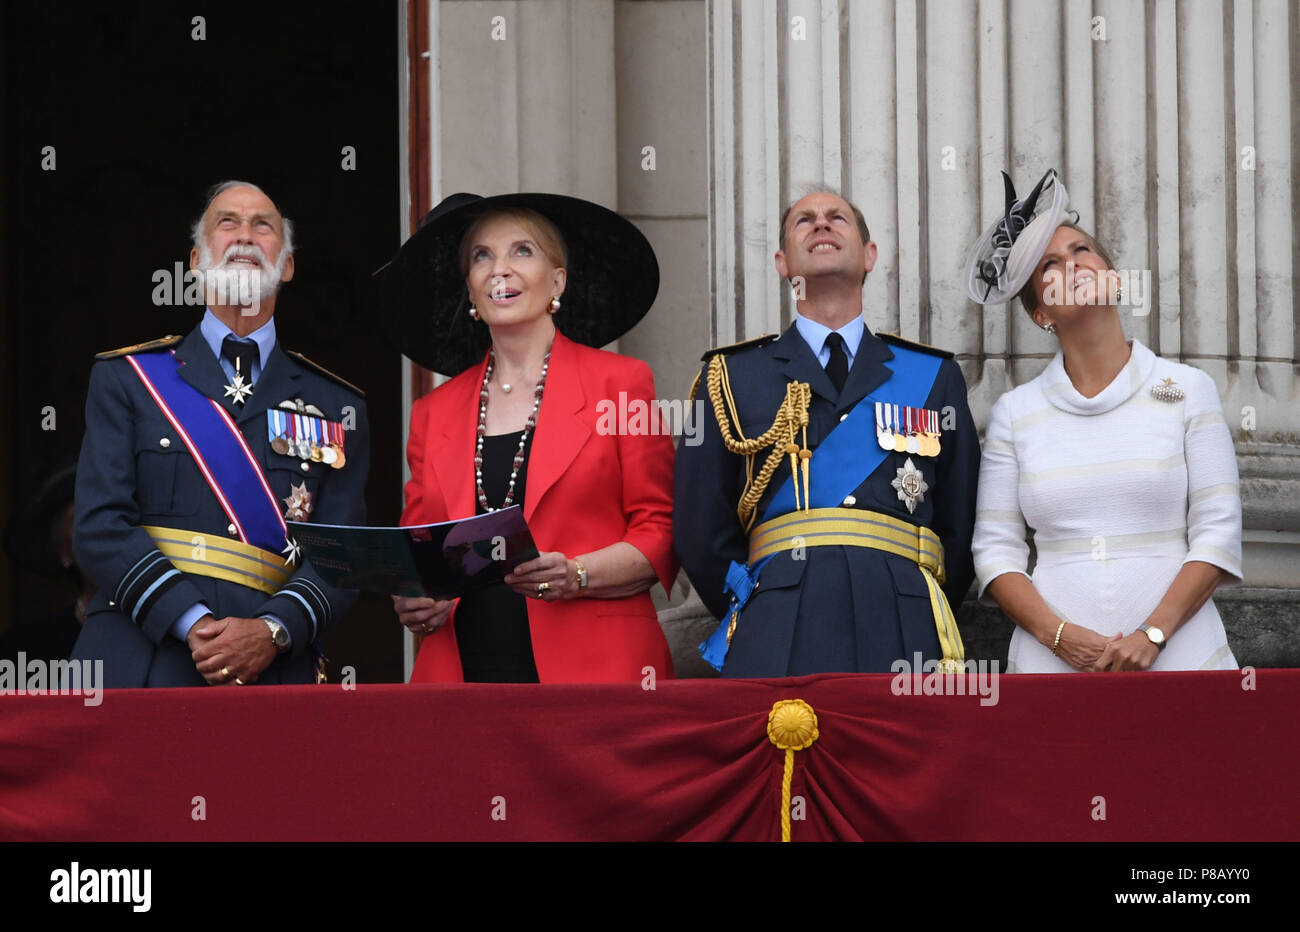 (De gauche à droite) le prince Michael de Kent, la princesse Michael de Kent, comte de Wessex et de la comtesse de Wessex sur le balcon de Buckingham Palace, où ils ont vu un défilé aérien de la Royal Air Force sur le centre de Londres à l'occasion du centenaire de la Royal Air Force. Banque D'Images